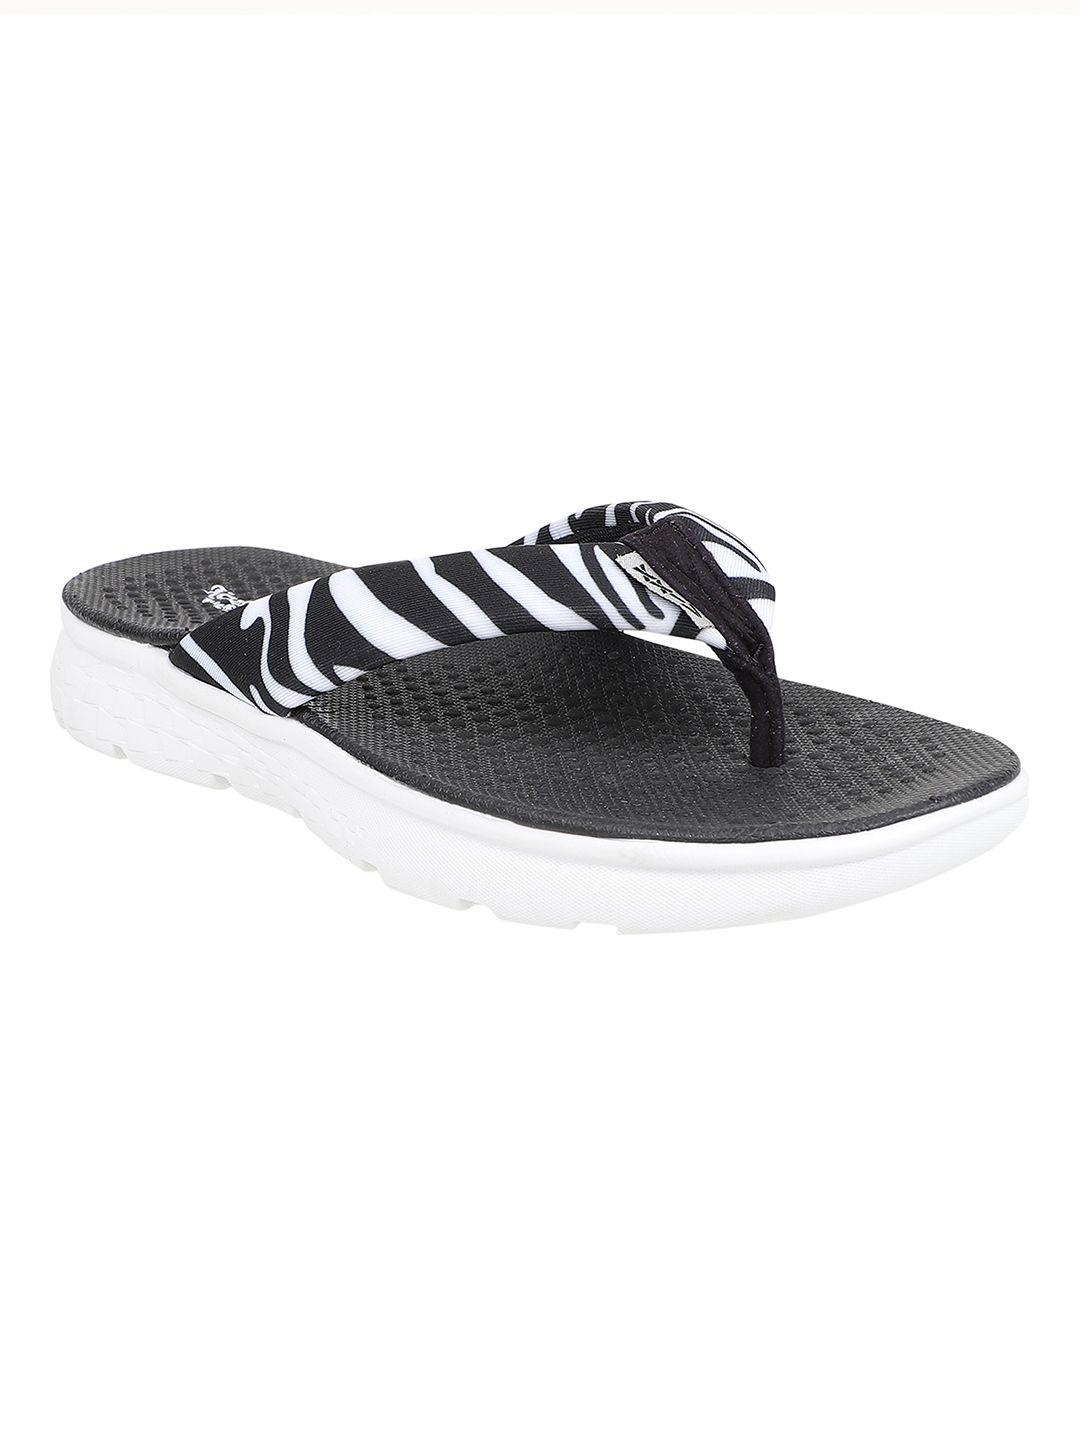 kazarmax women black & white zebra print thong flip-flops